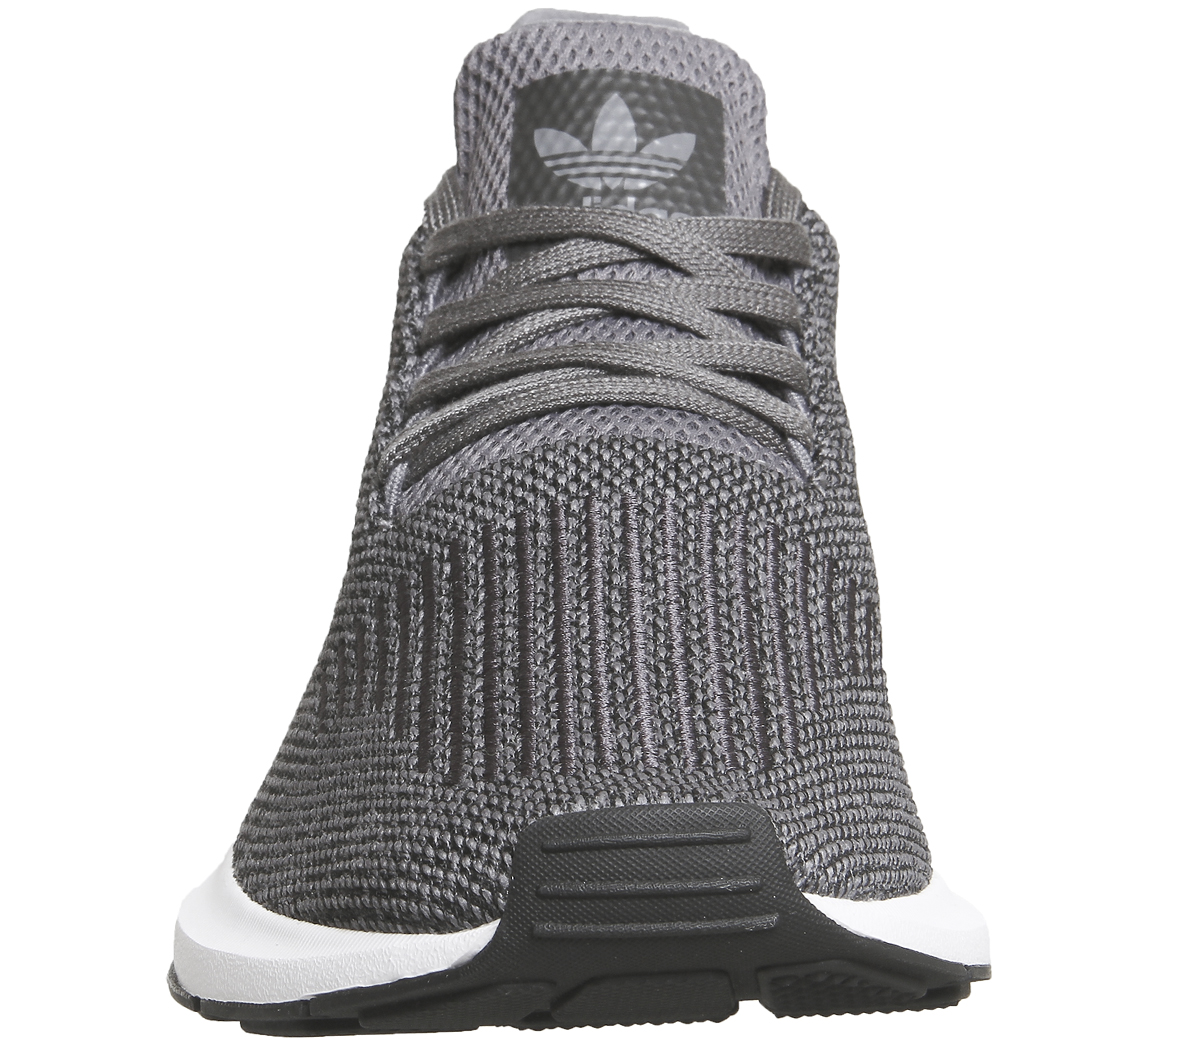 adidas swift run grey and white